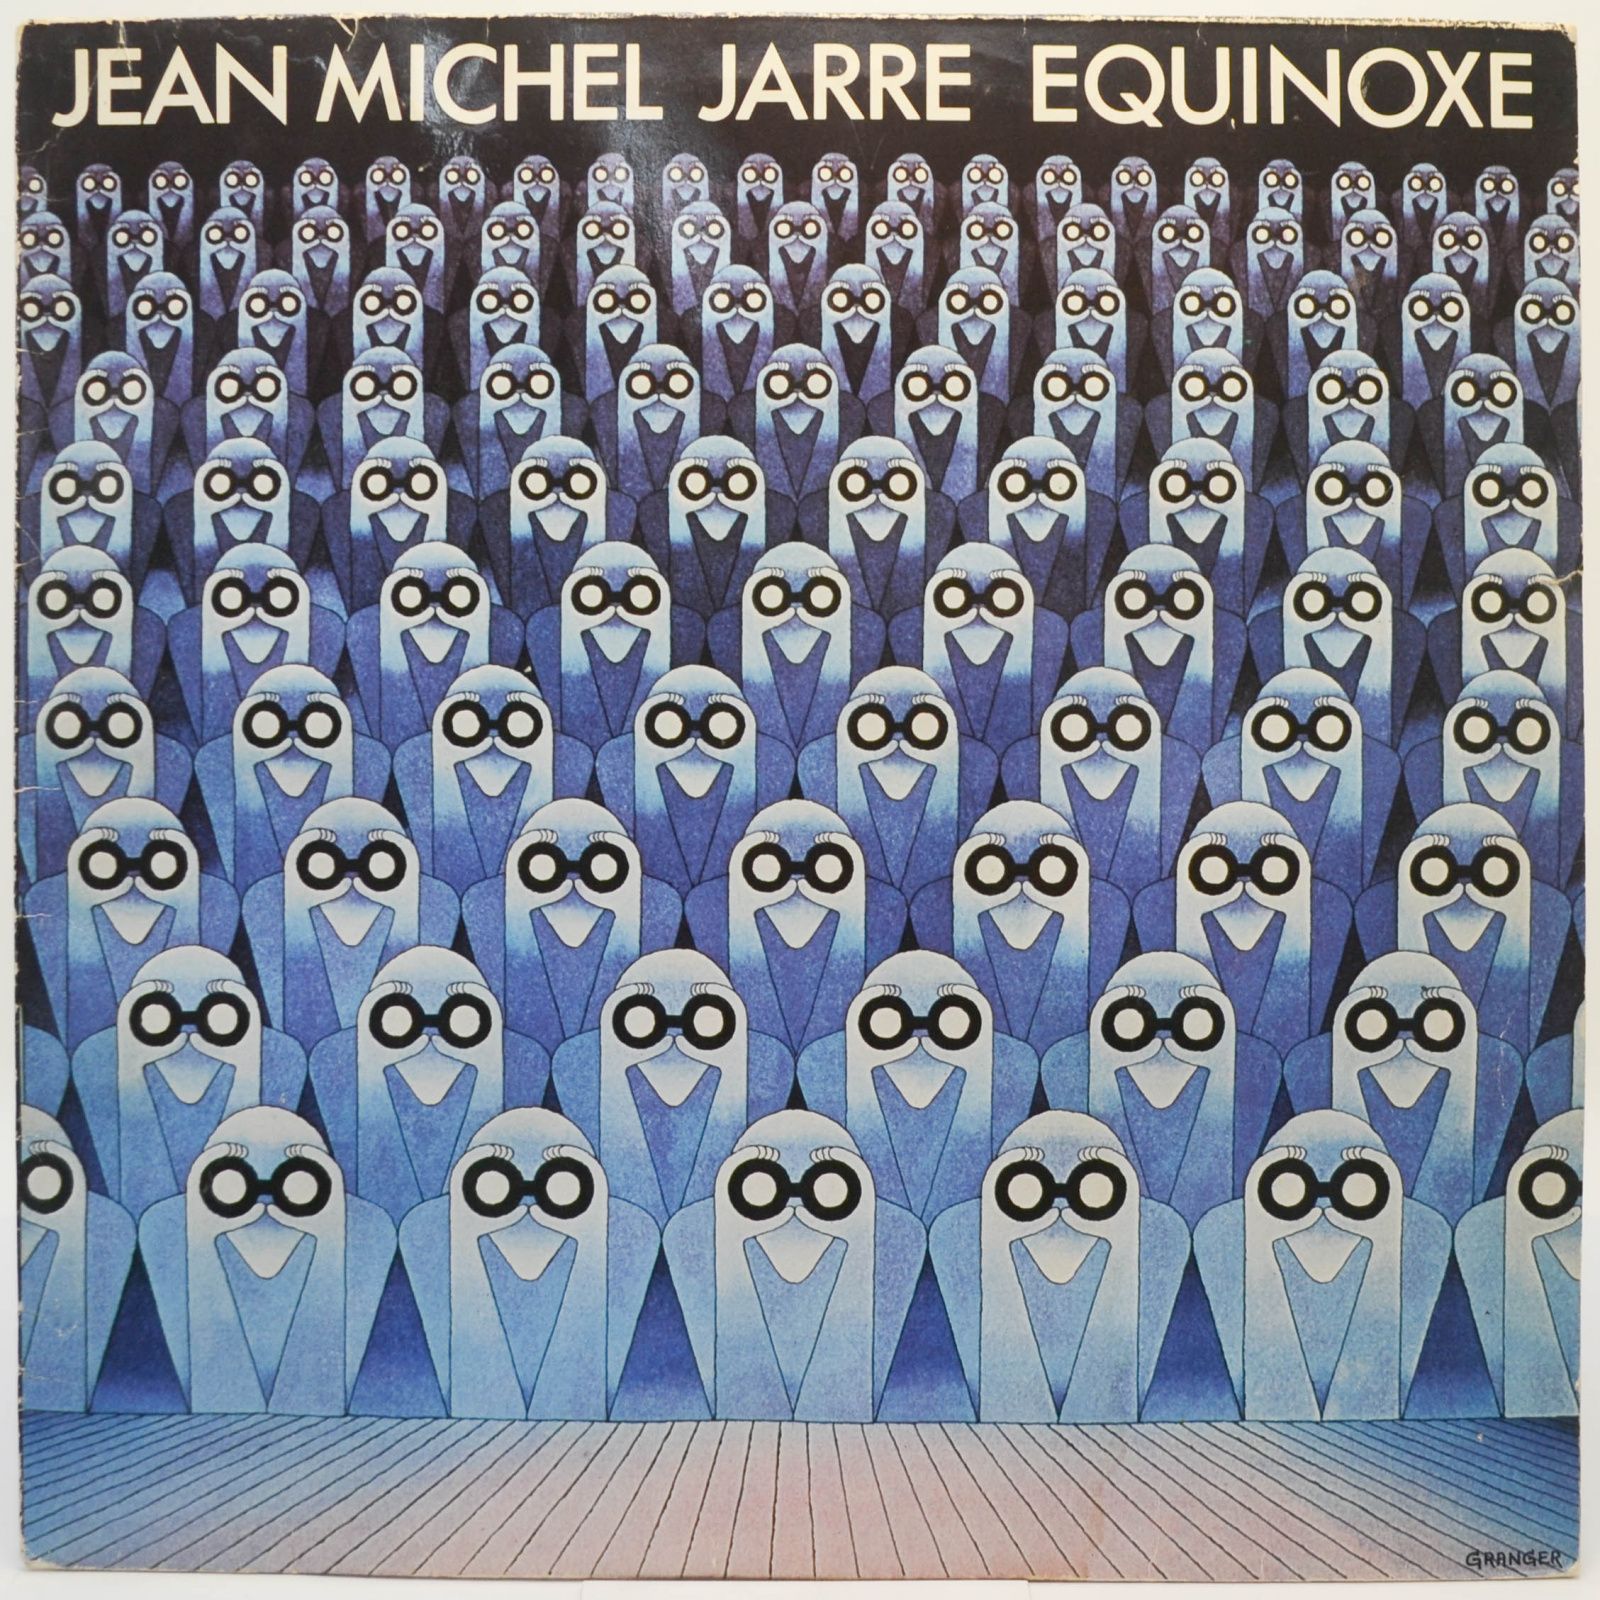 Equinoxe, 1978